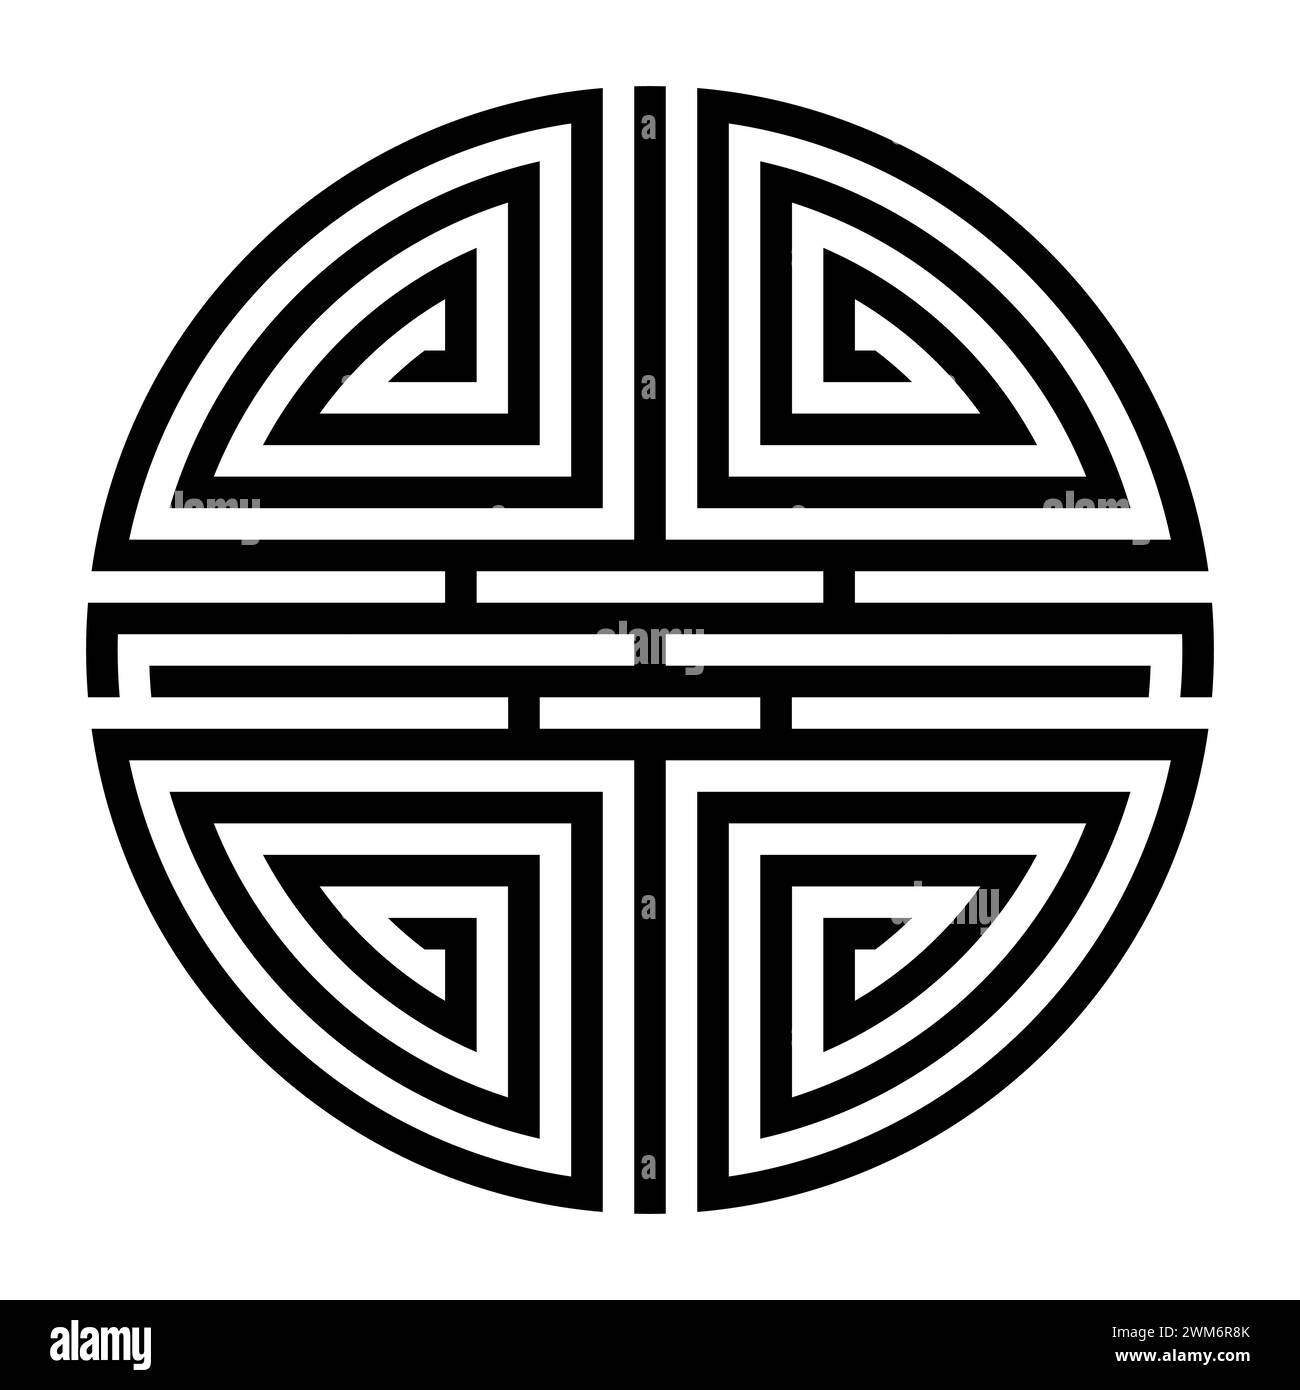 Shou, variation du symbole chinois pour la longévité. Une longue vie est une bénédiction dans la pensée traditionnelle chinoise, symbolisée par Shou Xing. Banque D'Images